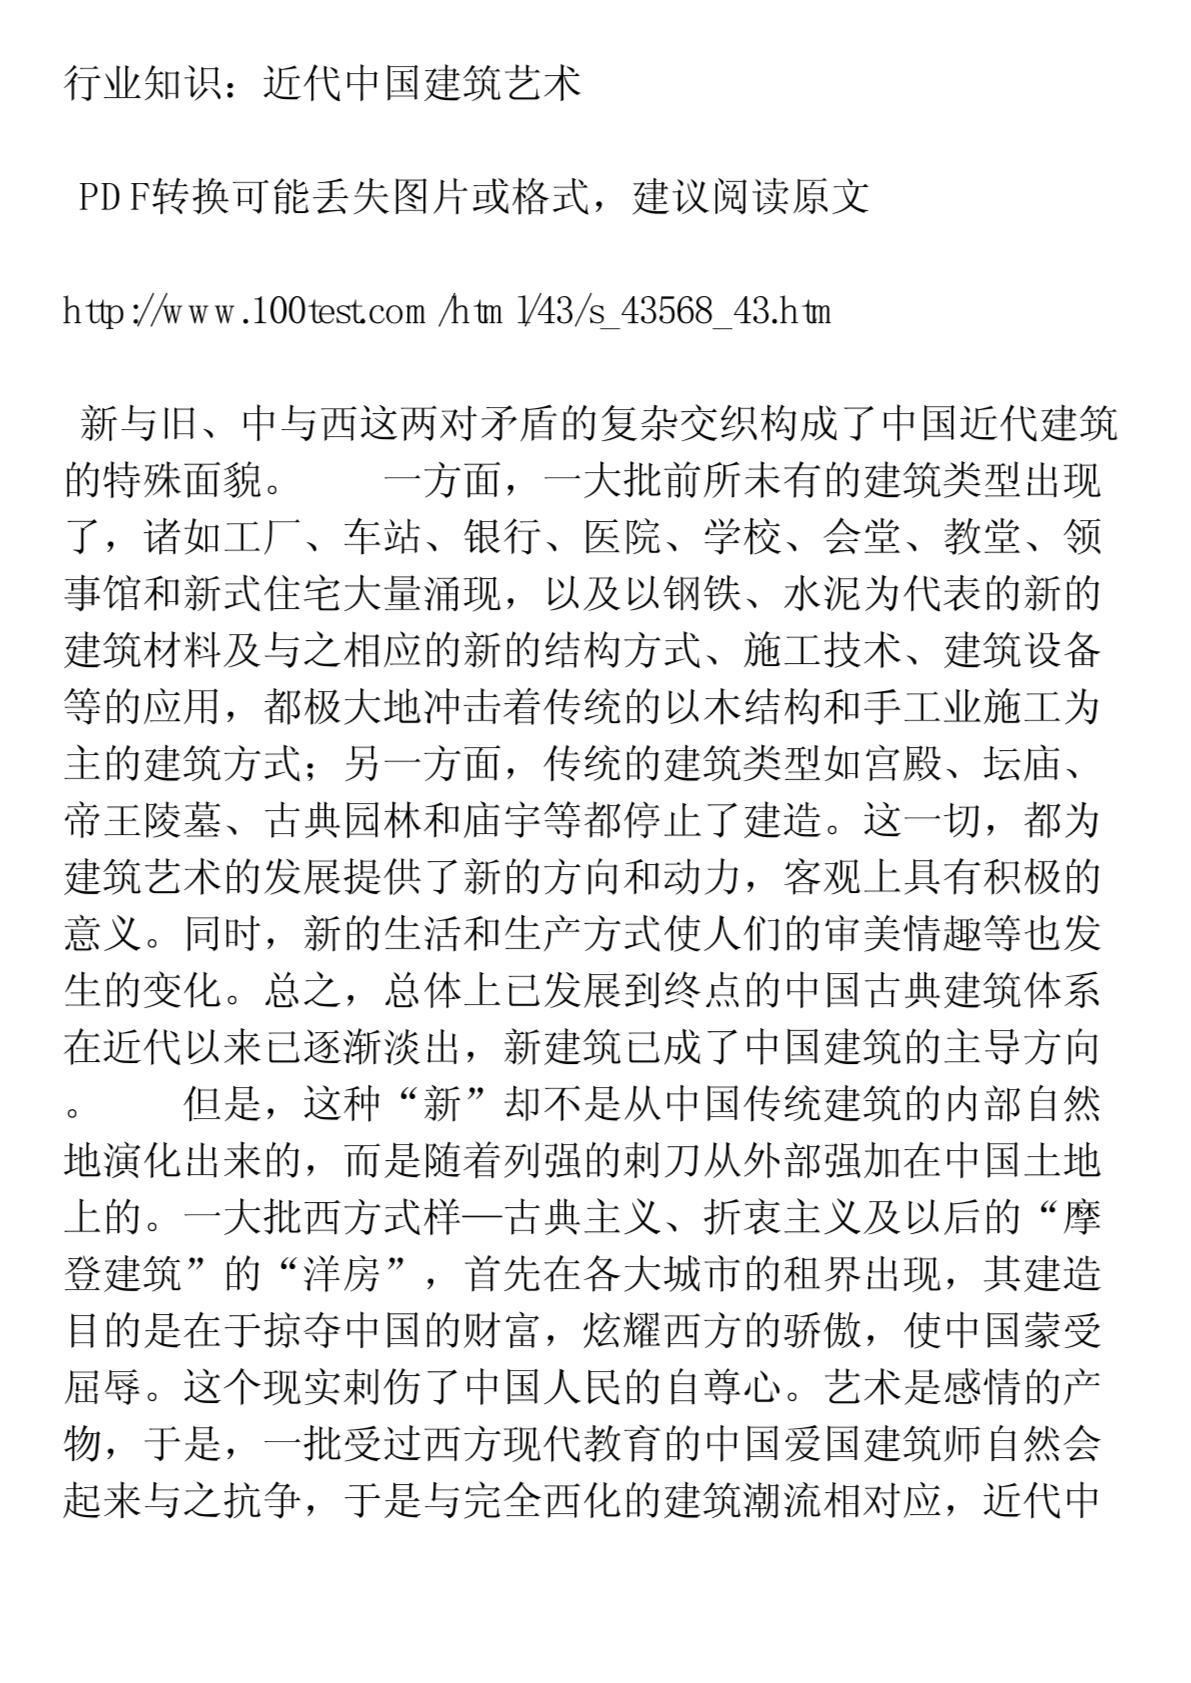 行业知识：近代中国建筑艺术PDF转换可能丢失图片或格式，建议阅读原文-图一